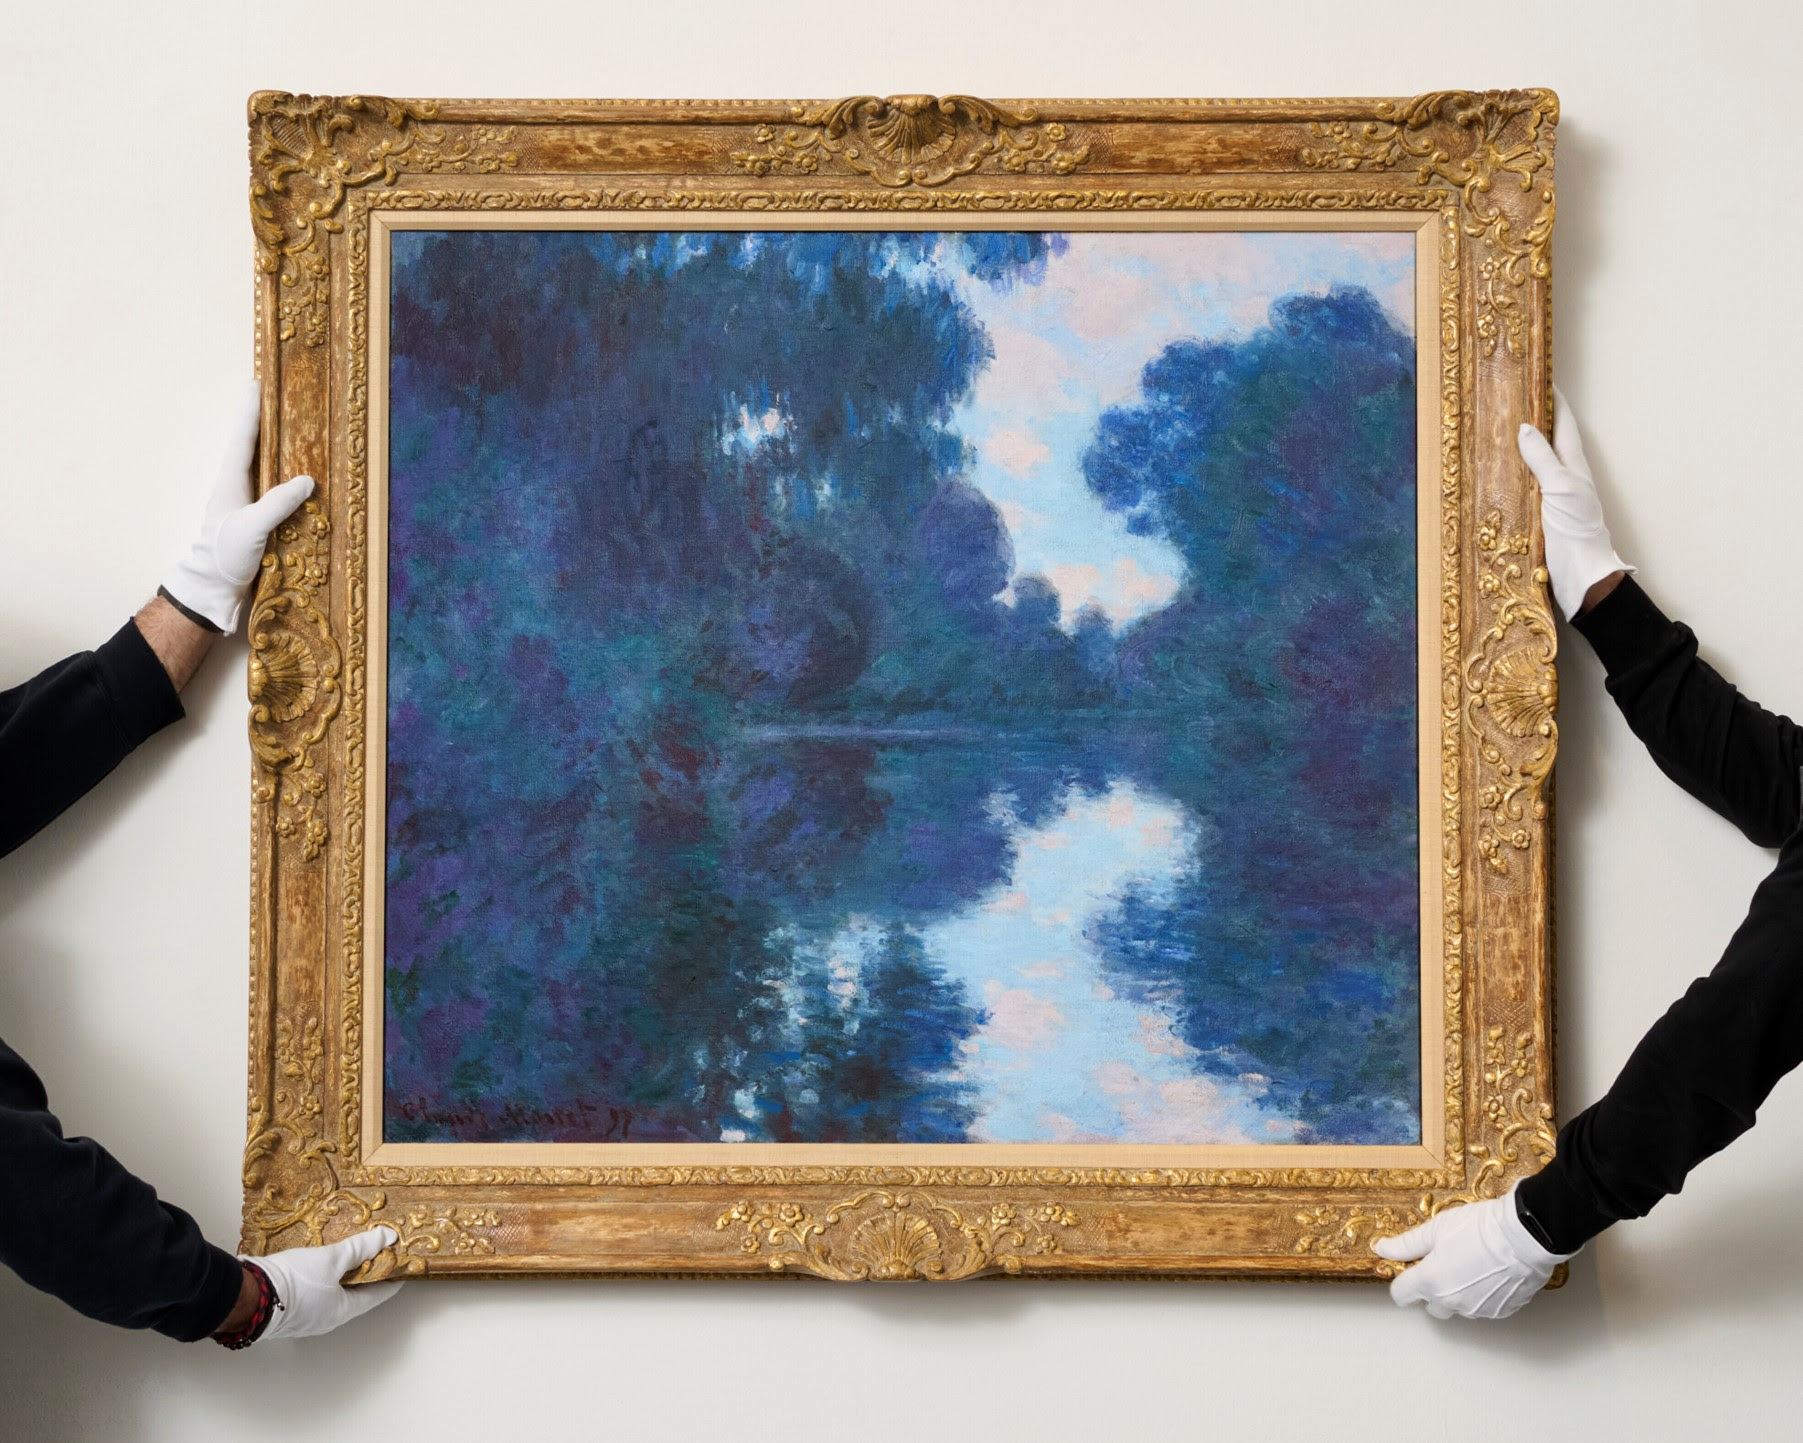 Luce che trasforma l’atmosfera. “Matinée sur la Seine, temps net” di Monet stima 12-18 milioni di sterline da Christie’s